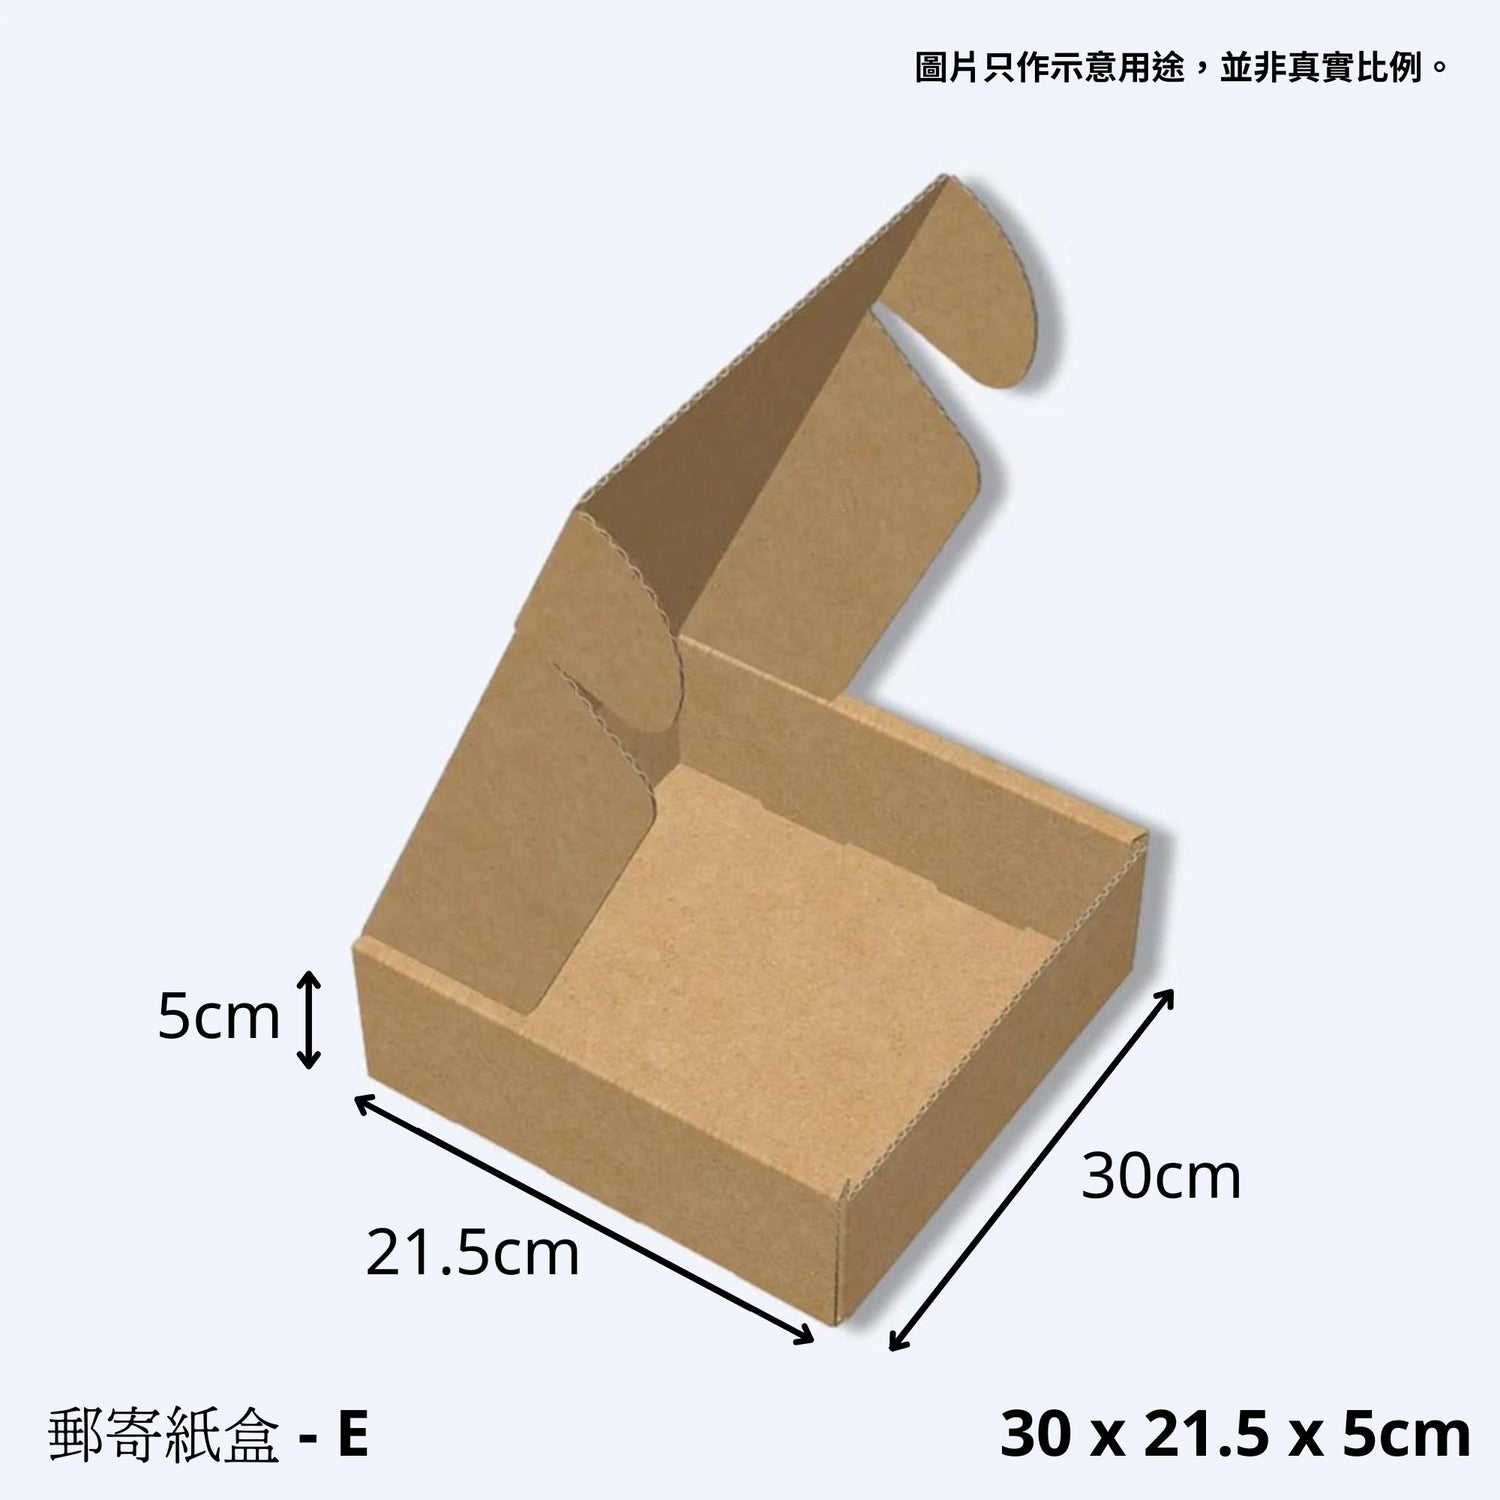 展開的紙盒在均勻的灰色背景上，尺寸標注為30 x 21.5 x 5公分，顯示出紙盒作為一個飛機盒的寬敞內部，適合於運送大小不一的物品。